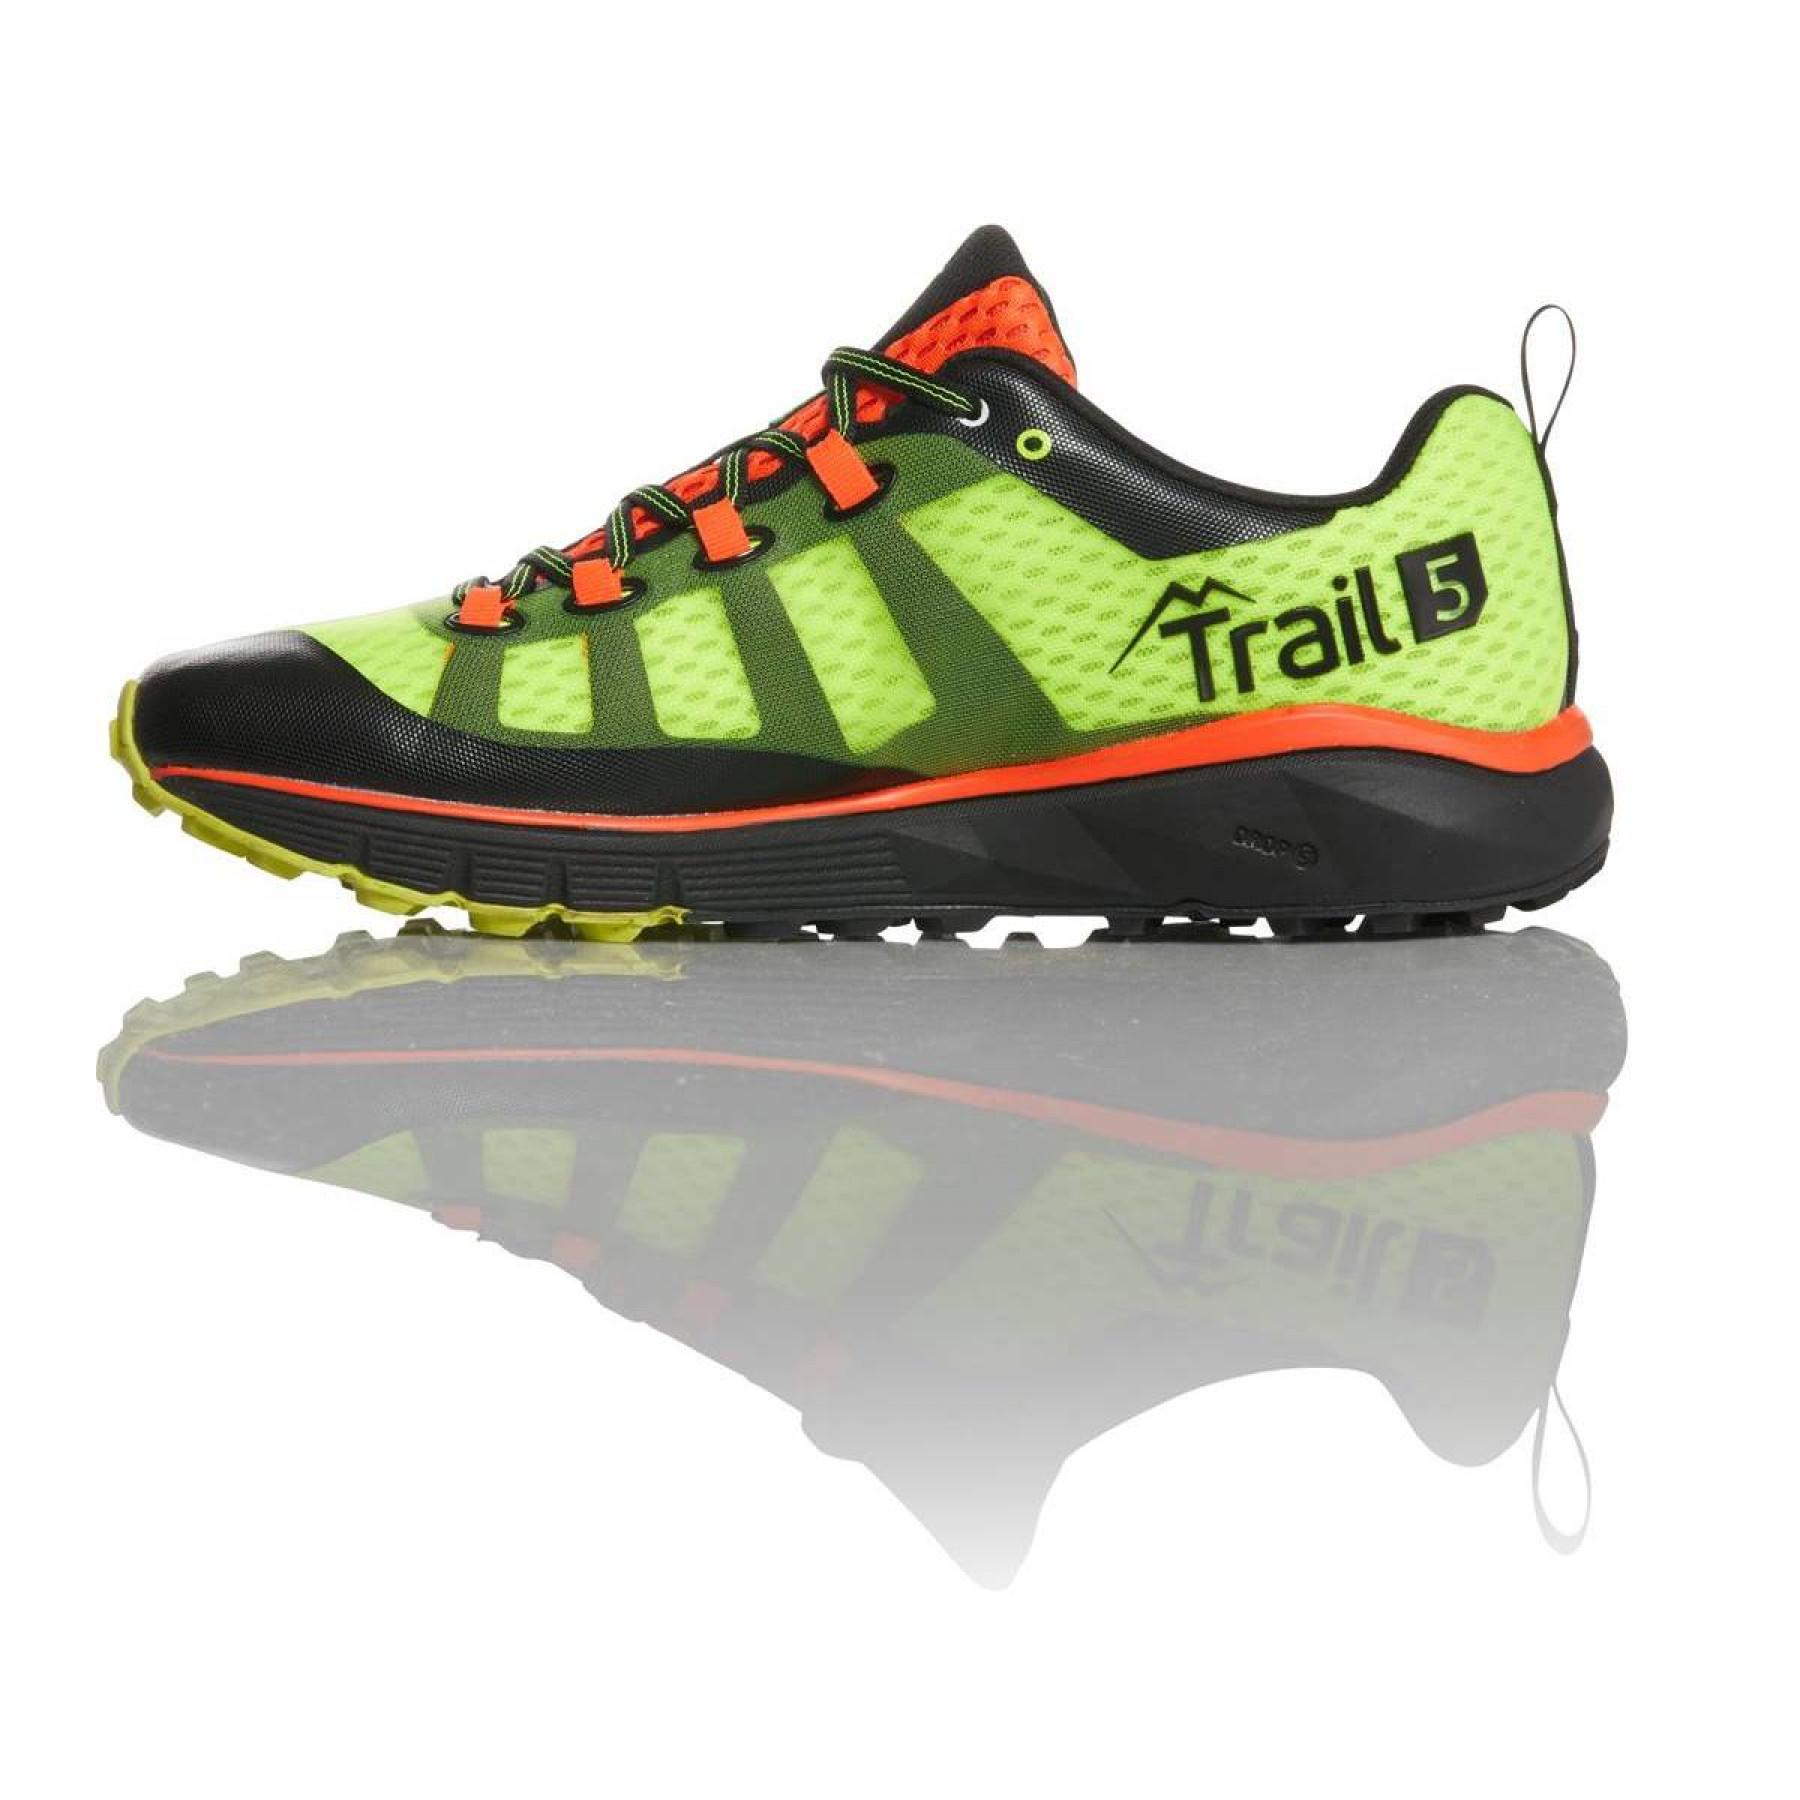 Sapatos Salming trail T5 